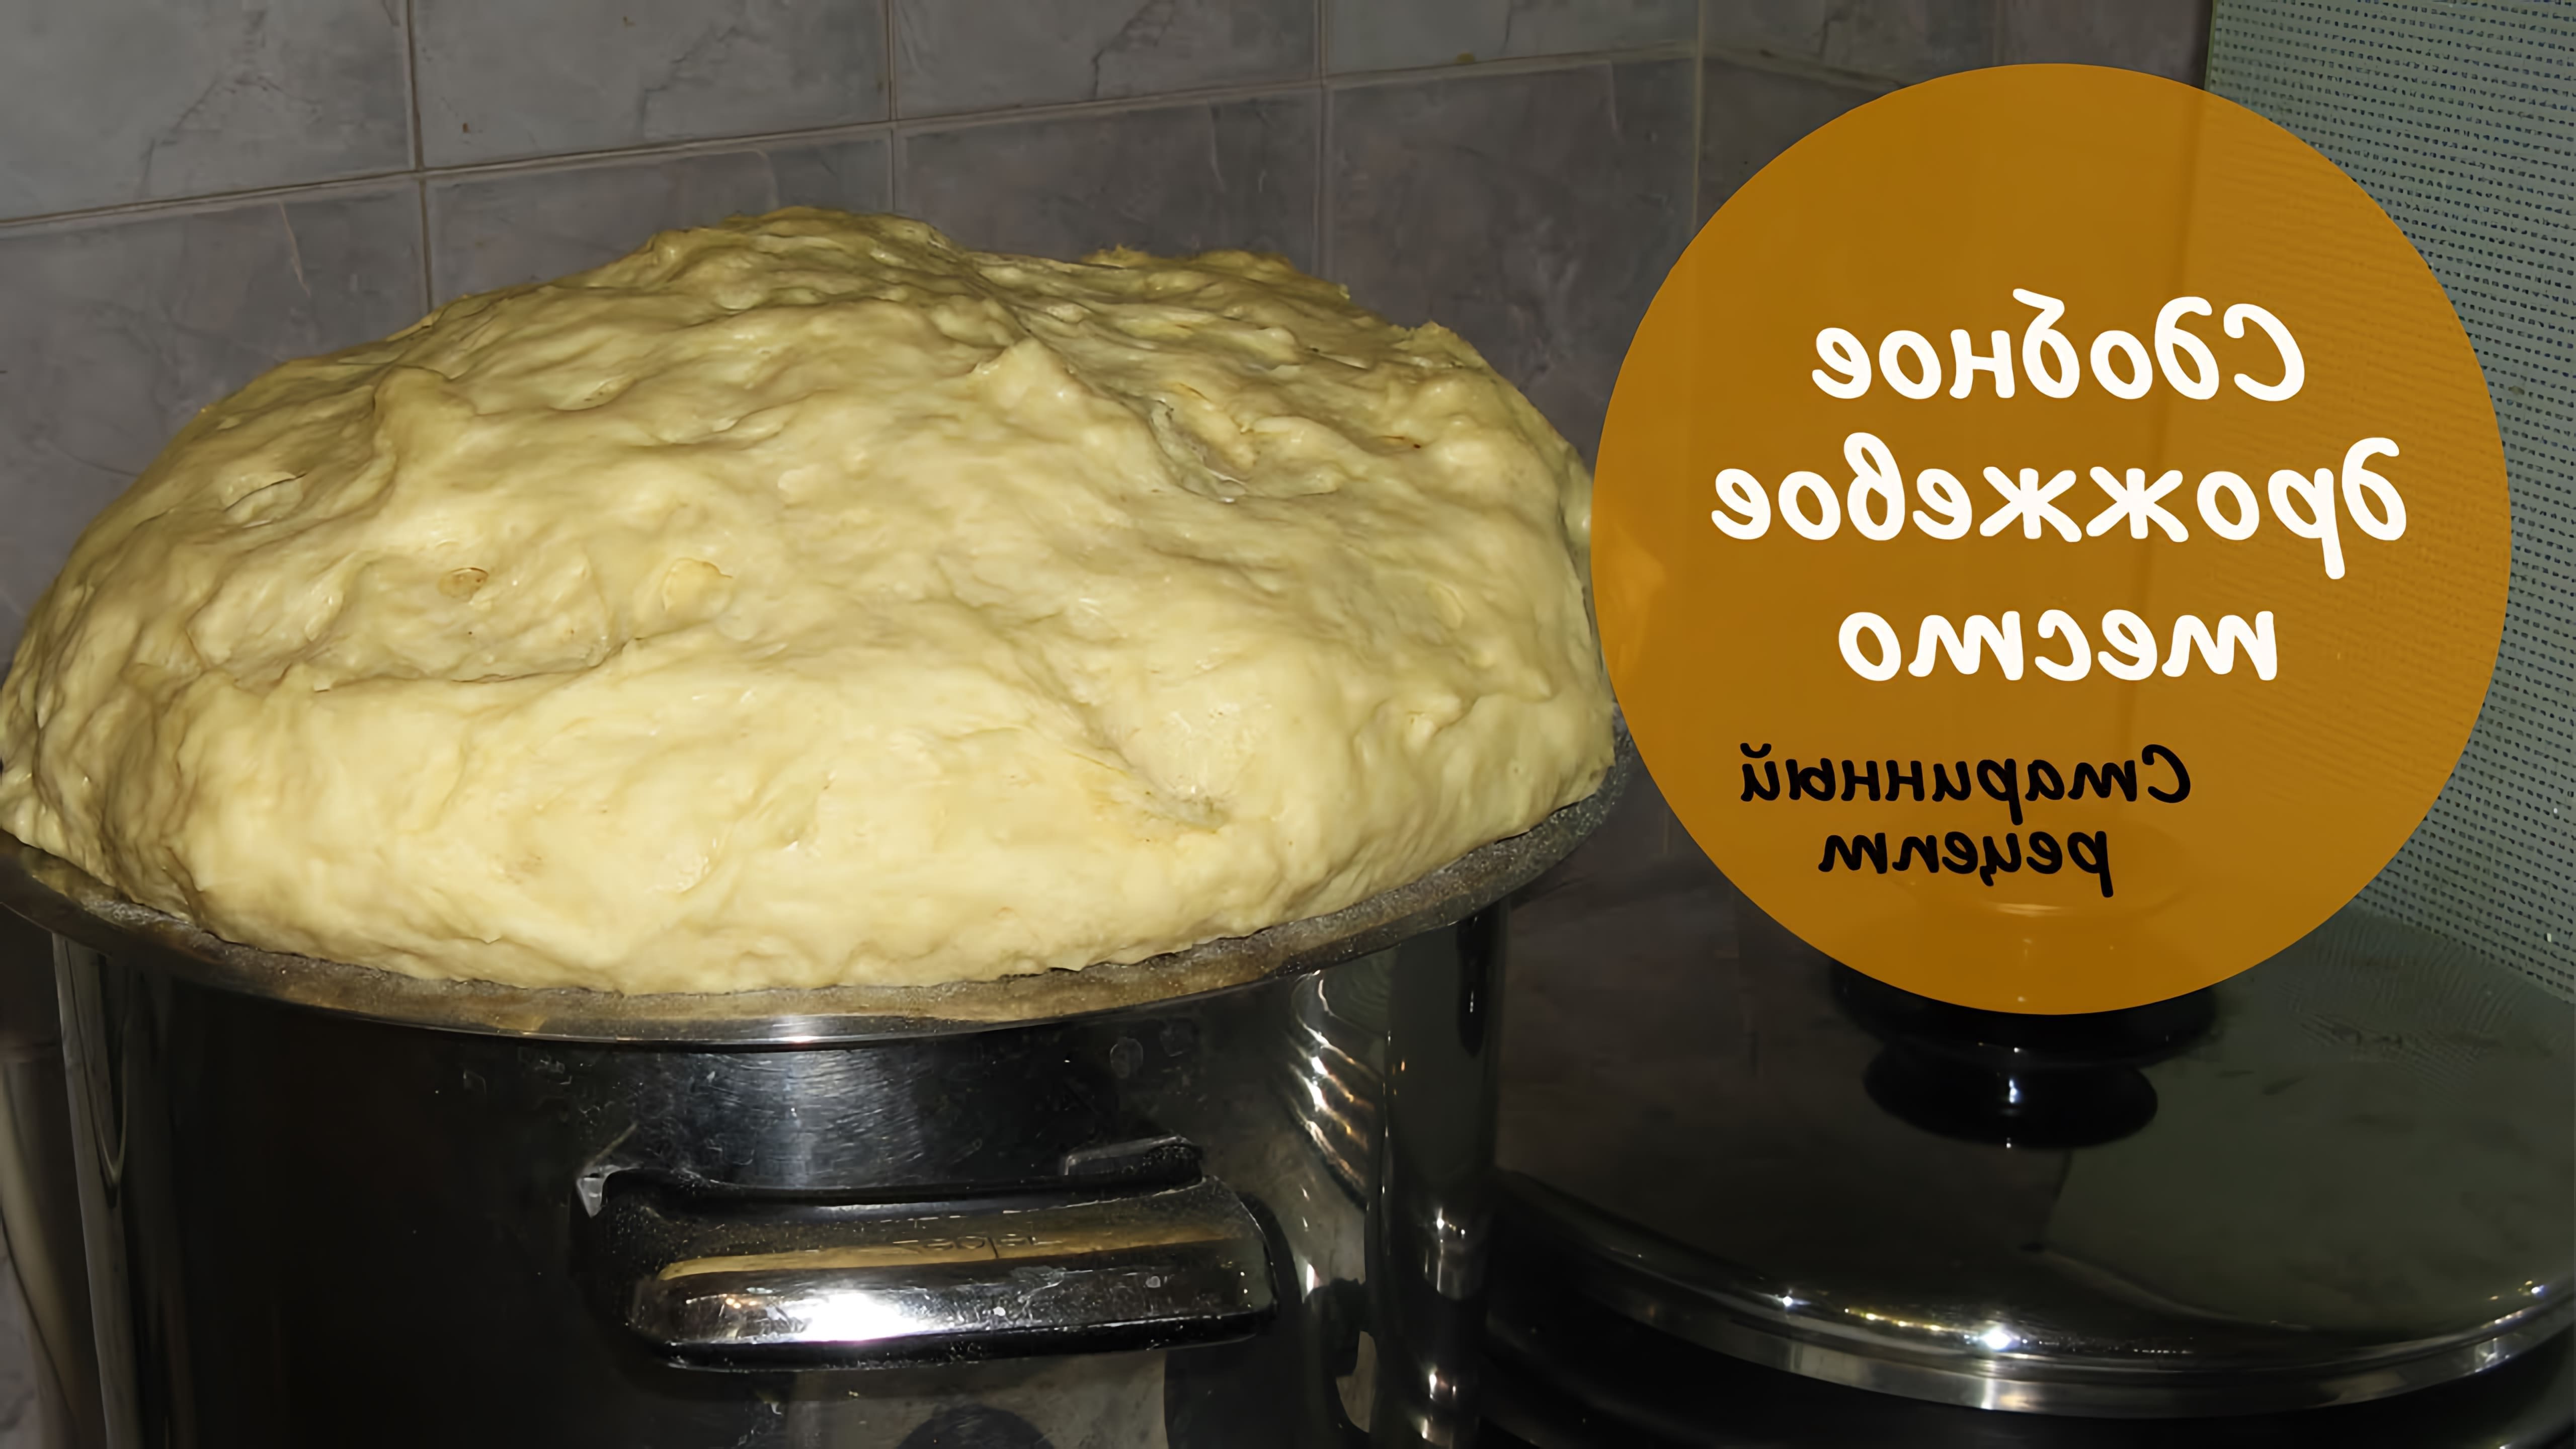 В этом видео демонстрируется процесс приготовления сдобного теста для пирожков и булочек по старинному семейному рецепту